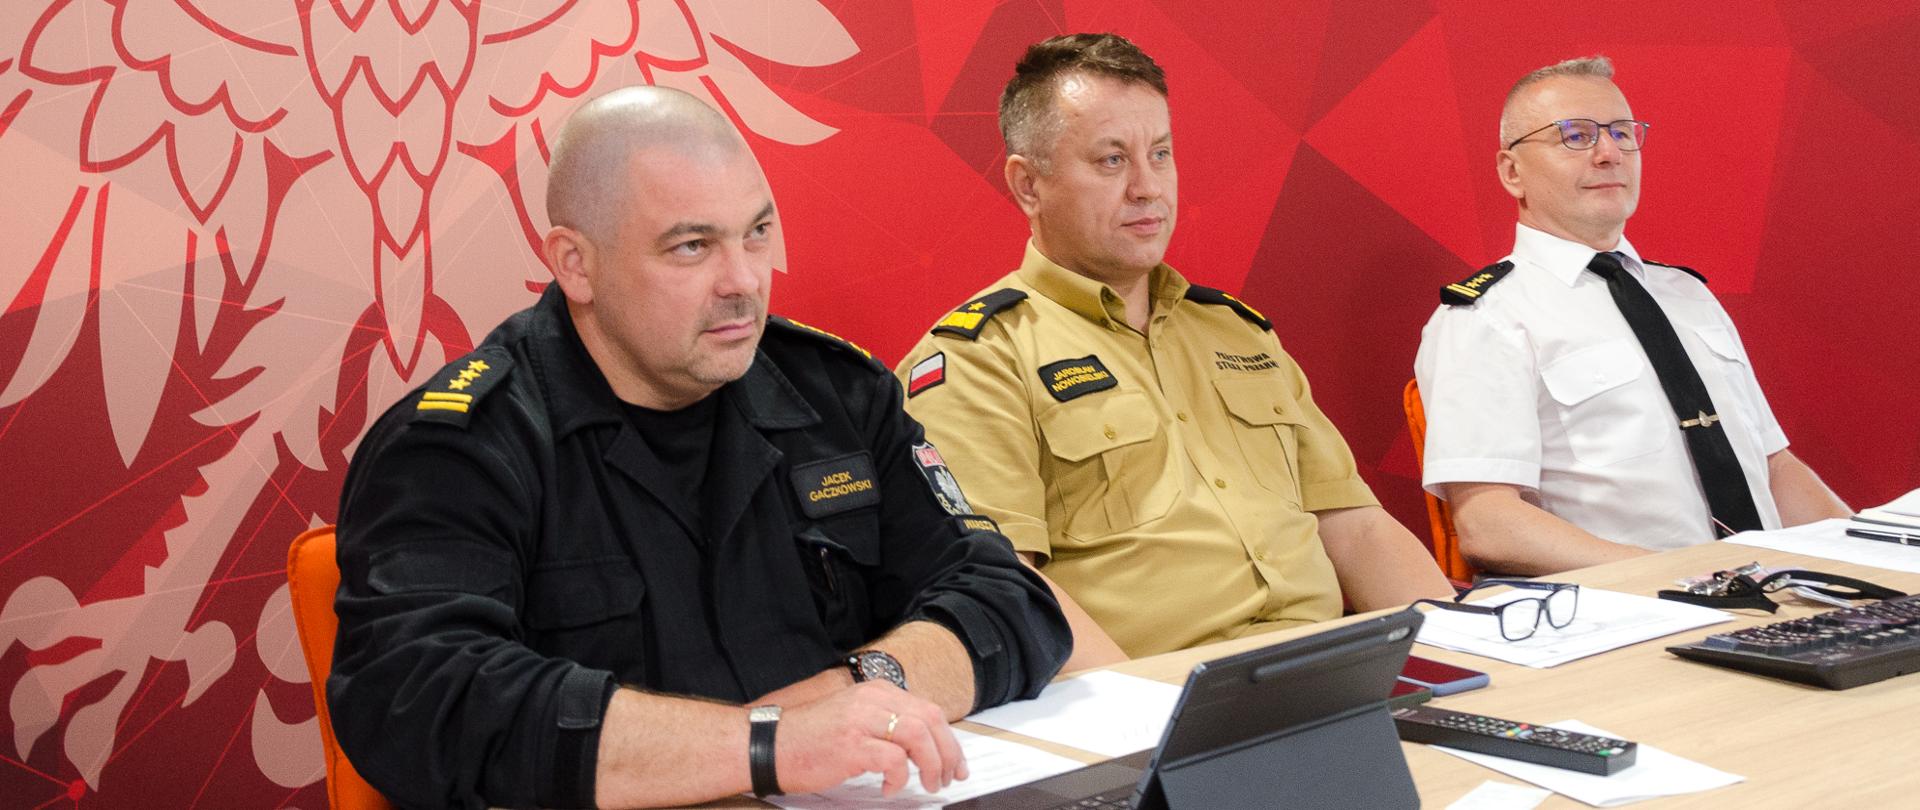 Na zdjęciu widać trzech strażaków podczas wideokonferencji. Siedzą za stołem, w tle banner koloru czerwonego.